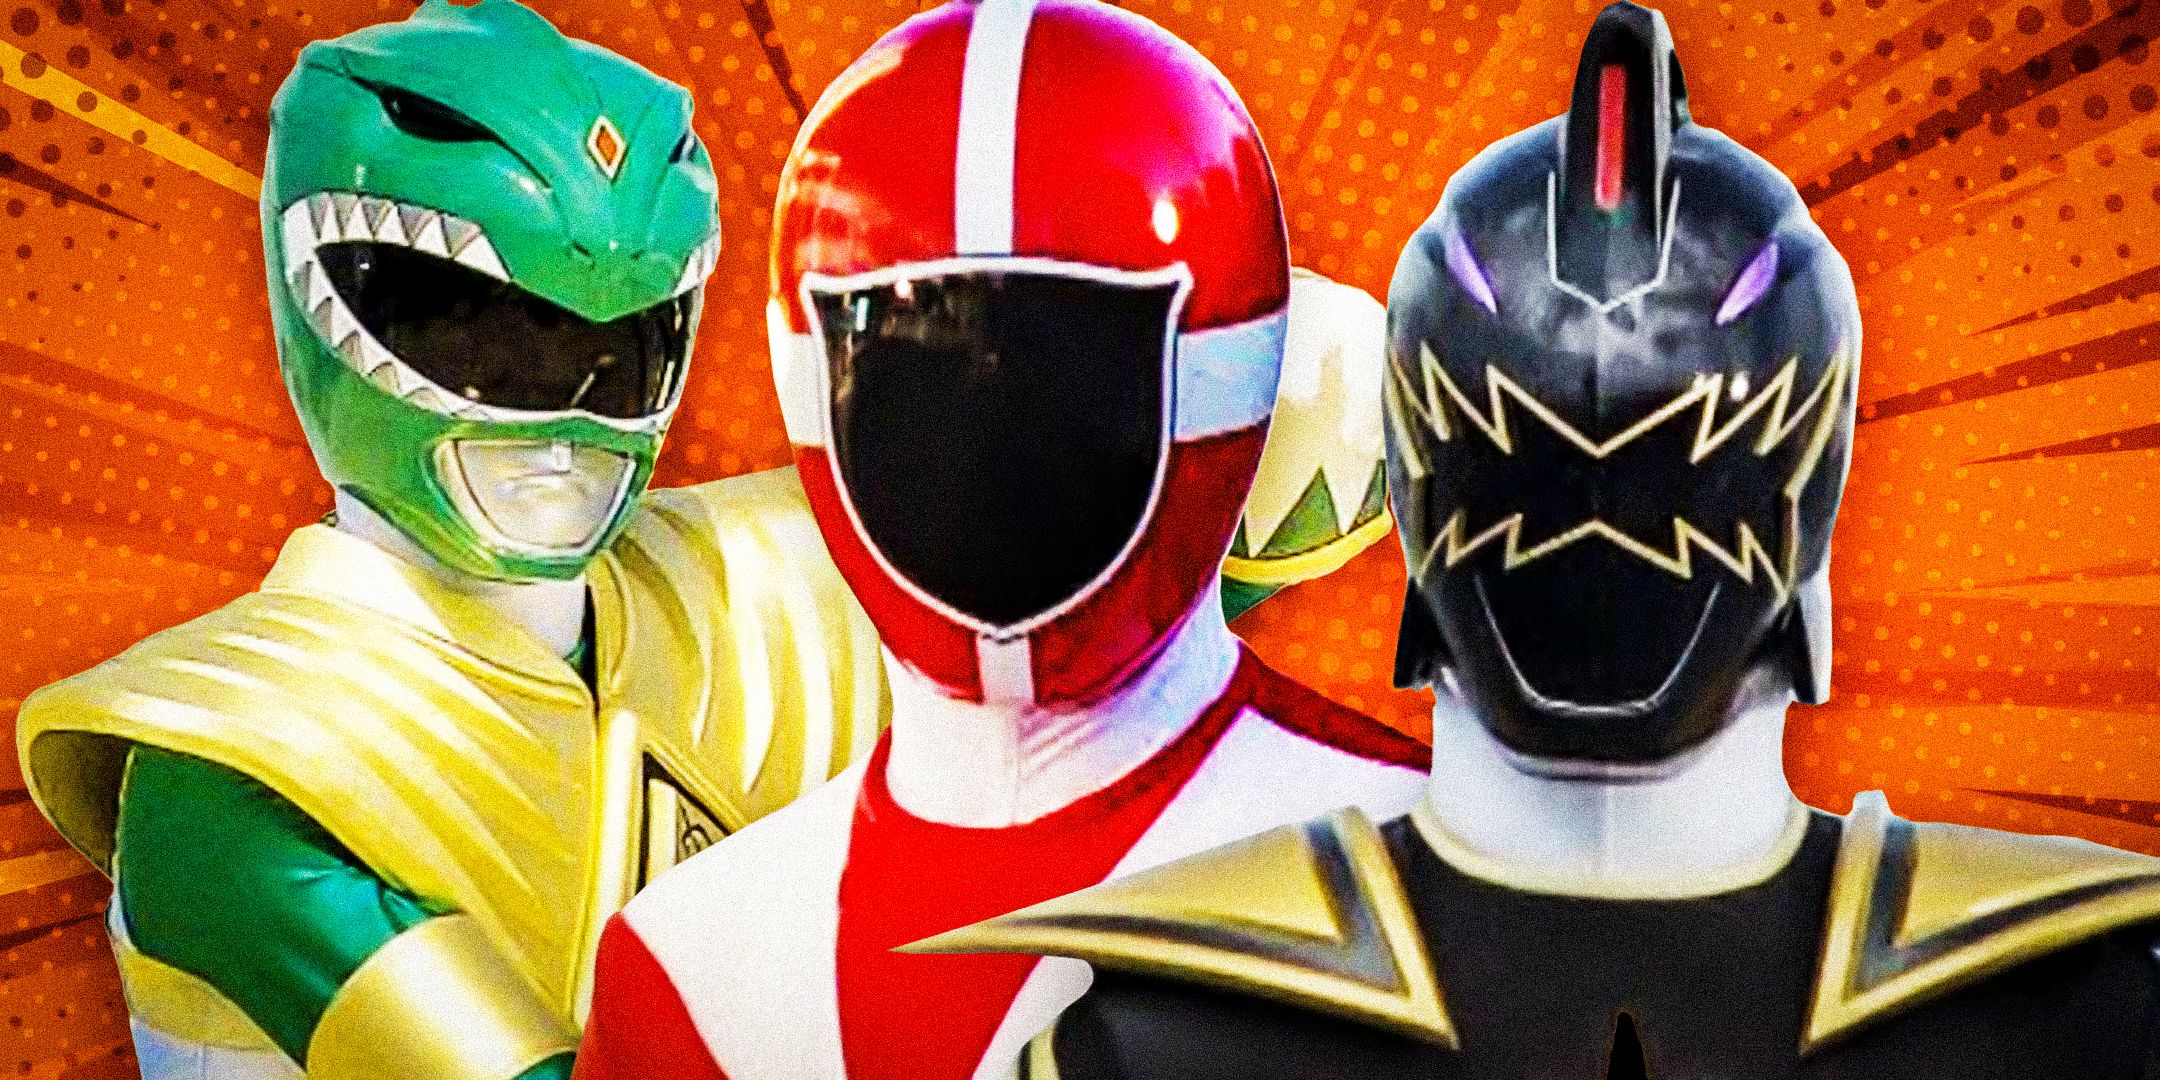  Mighty Morphin Green Ranger, Lightspeed Rescue Red Ranger, and Dino Thunder Black Ranger